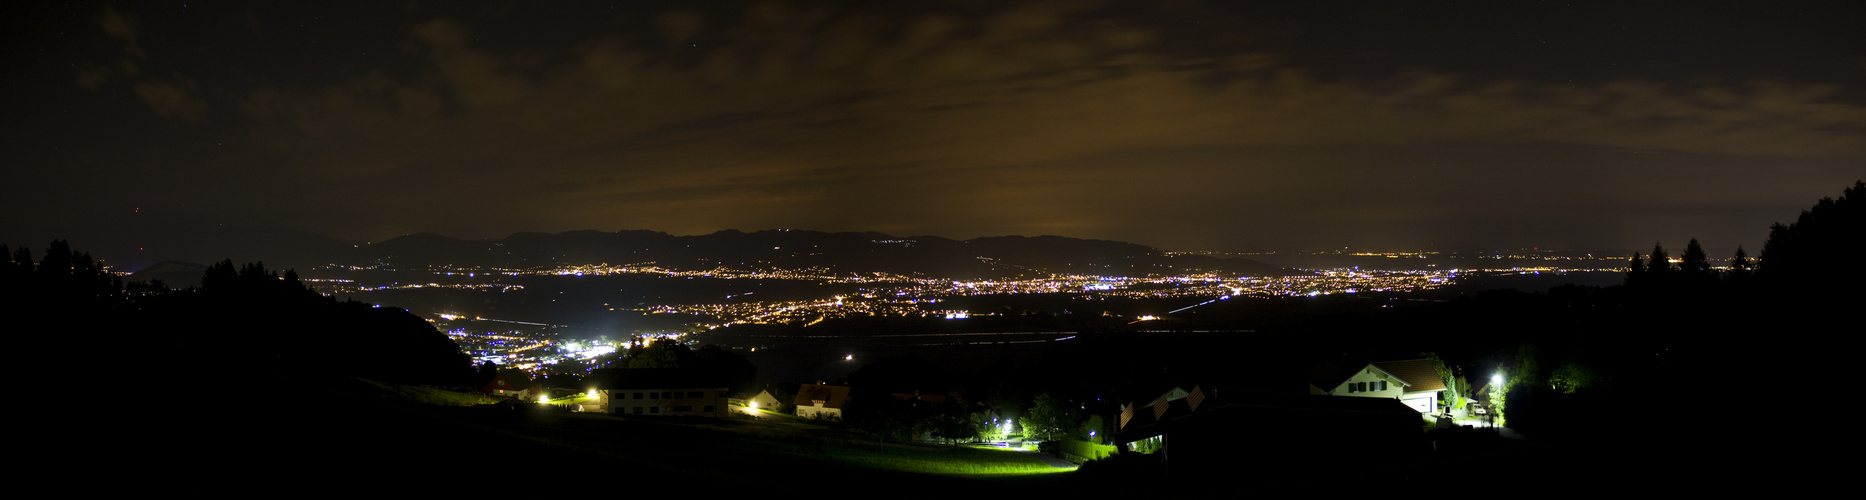 Rheintal at night